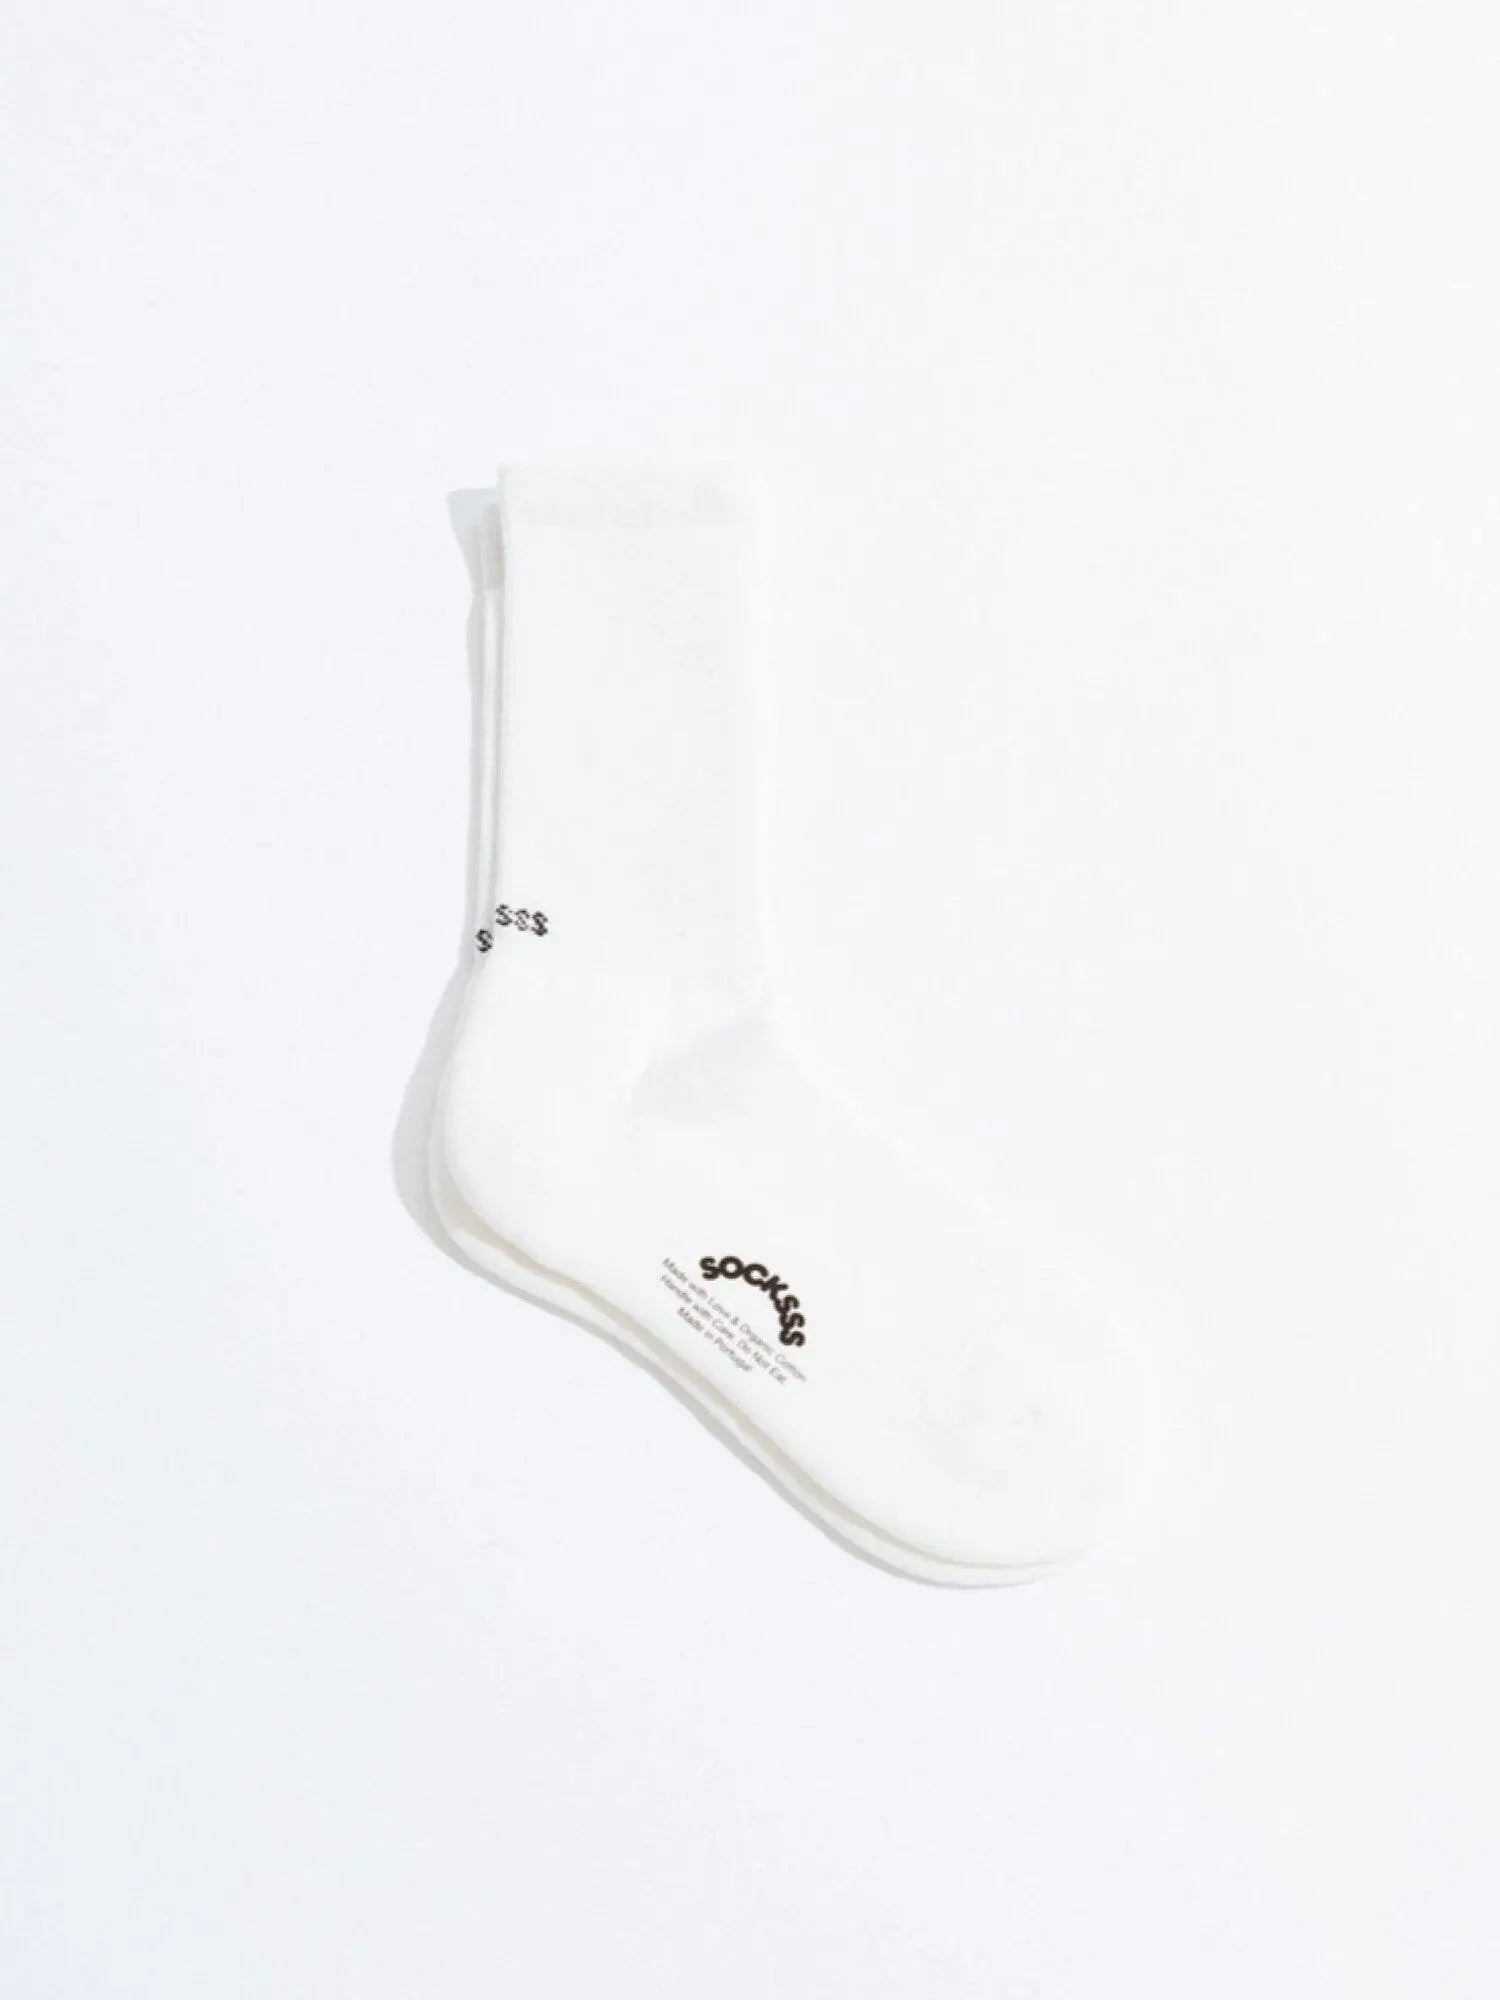 White Snow Socks - Socksss Socksss